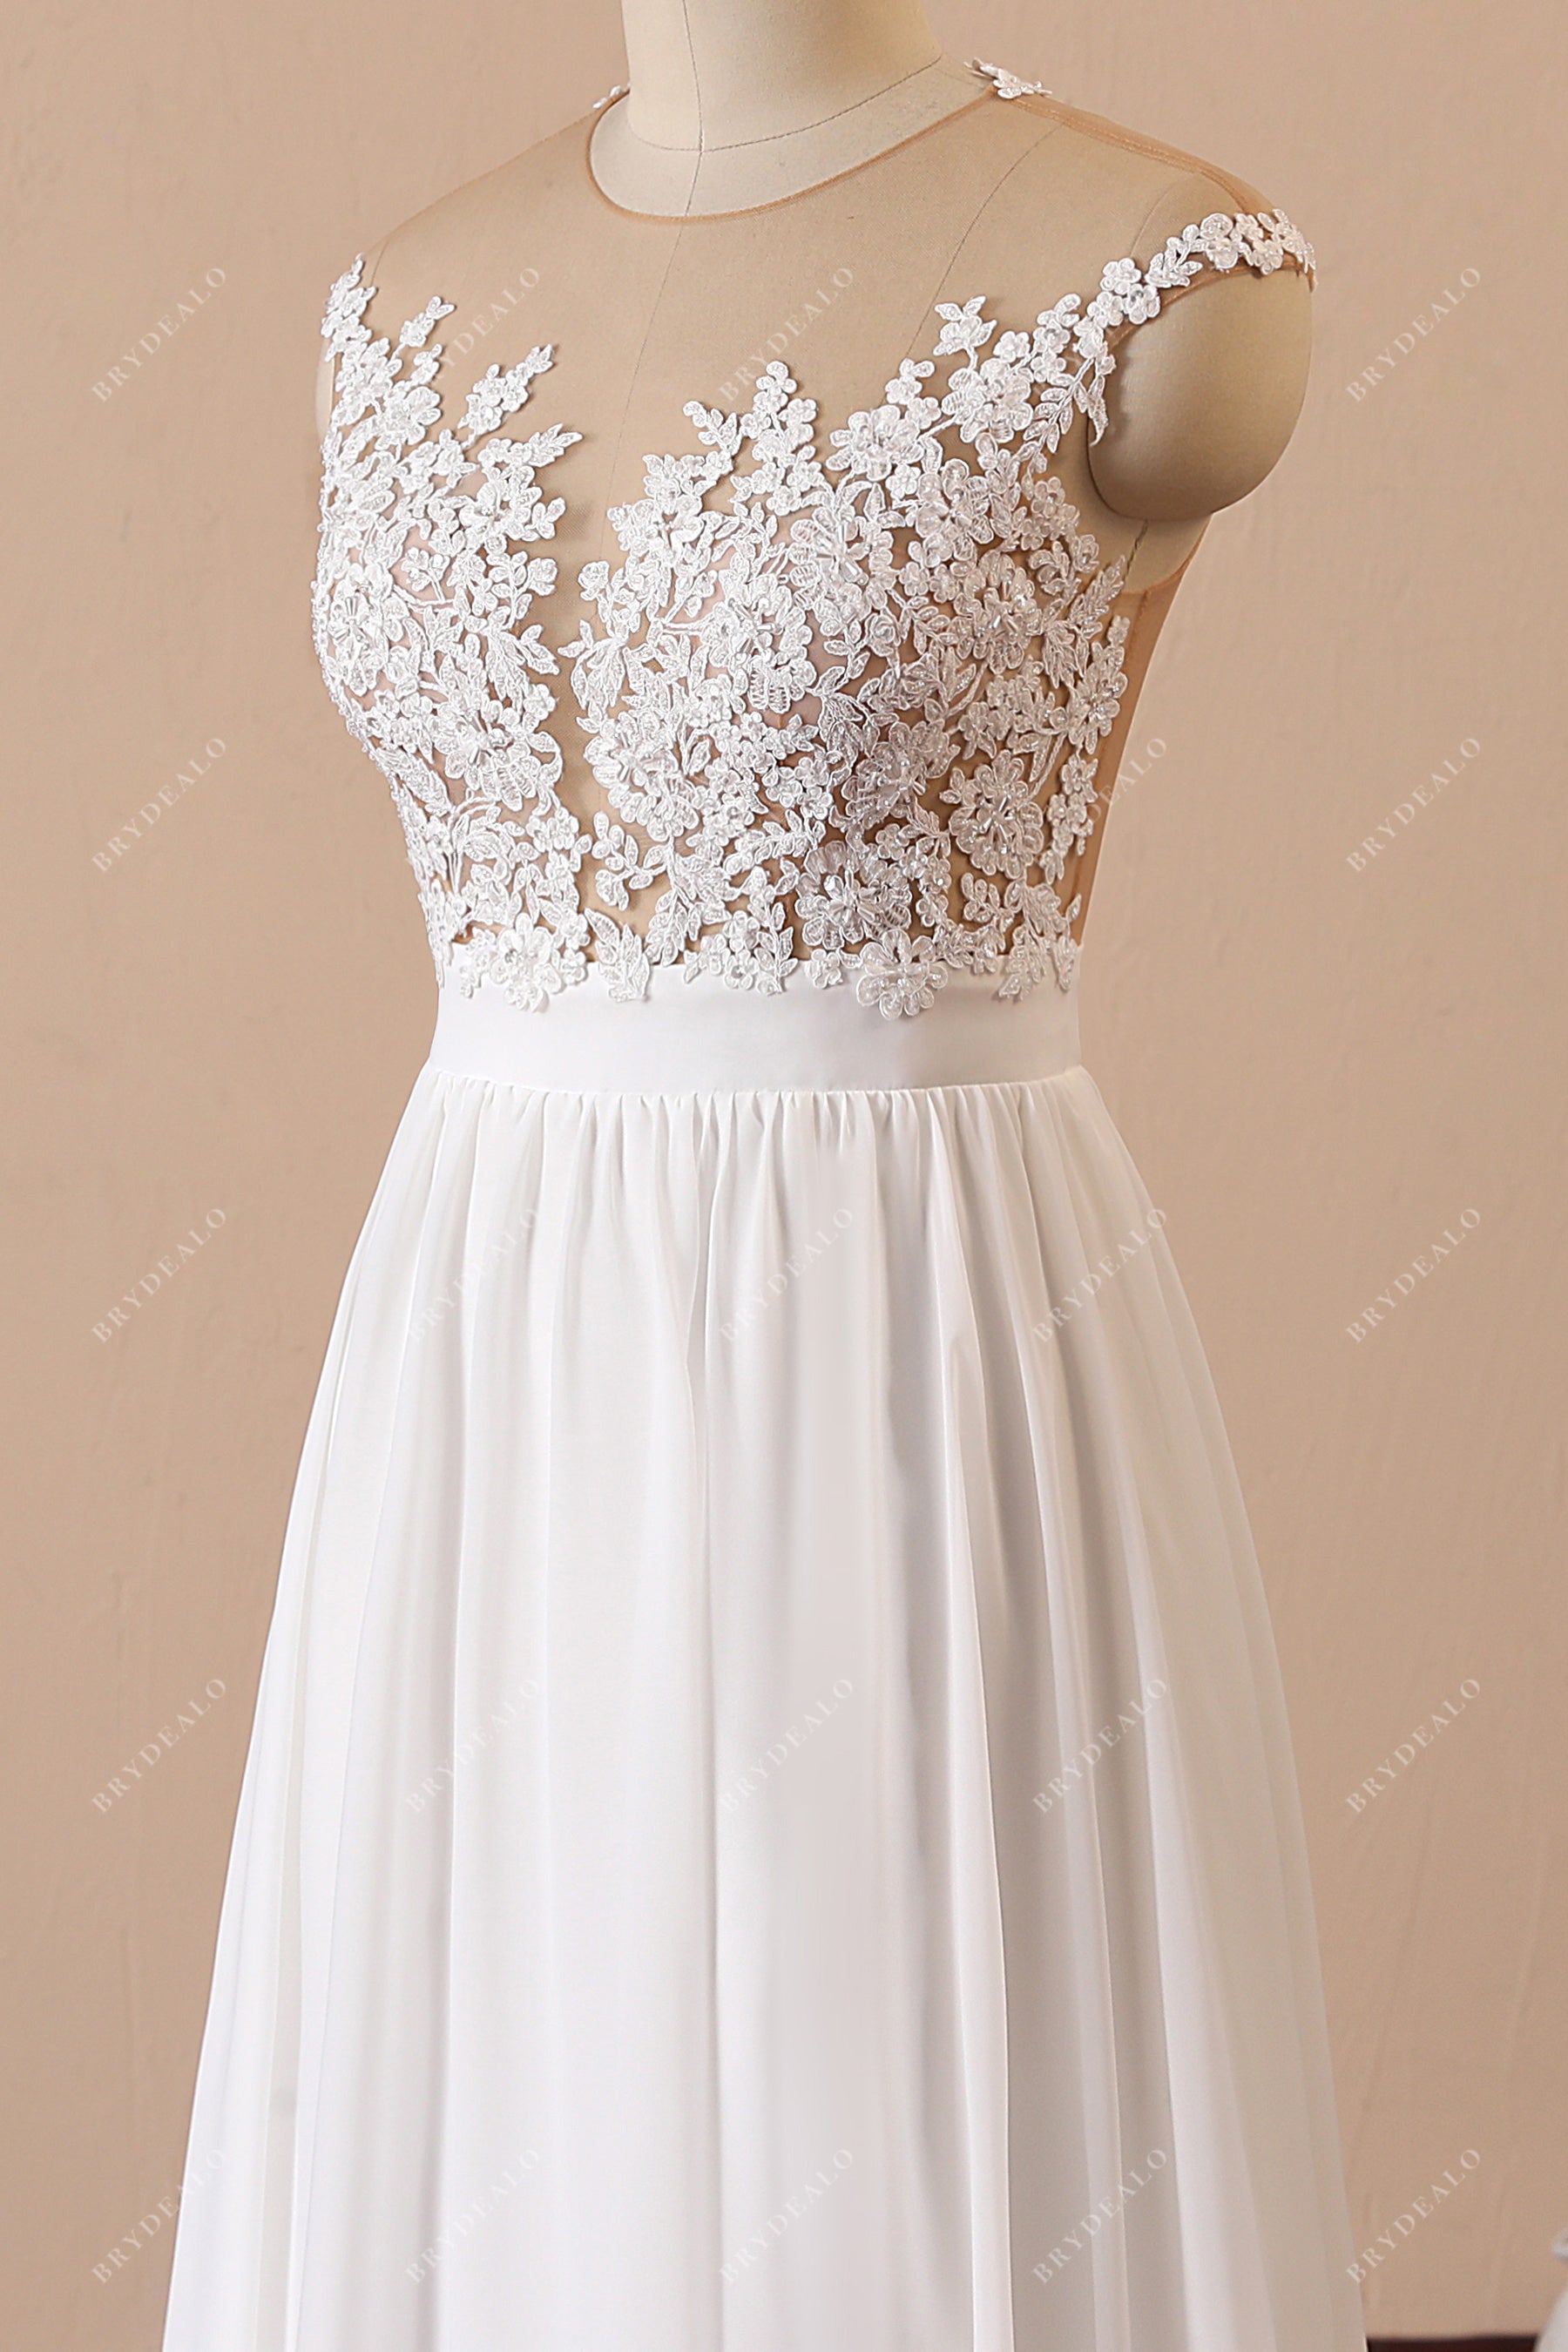 sheer lace top waistband chiffon spring bridal dress